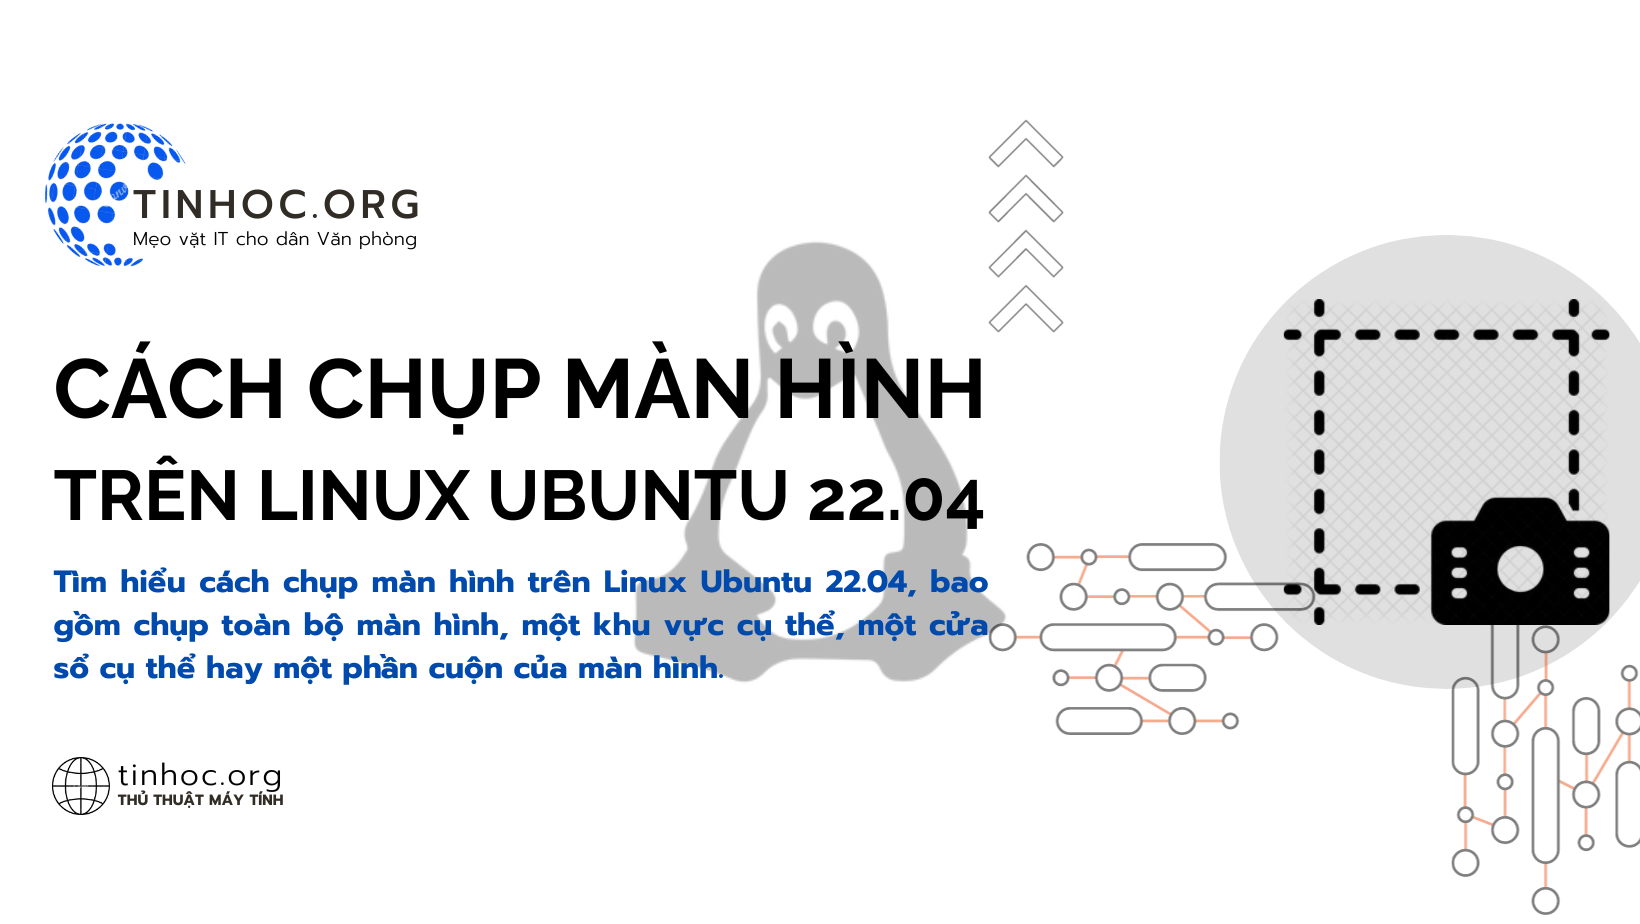 Tìm hiểu cách chụp màn hình trên Linux Ubuntu 22.04, bao gồm chụp toàn bộ màn hình, một khu vực cụ thể, một cửa sổ cụ thể hay một phần cuộn của màn hình.